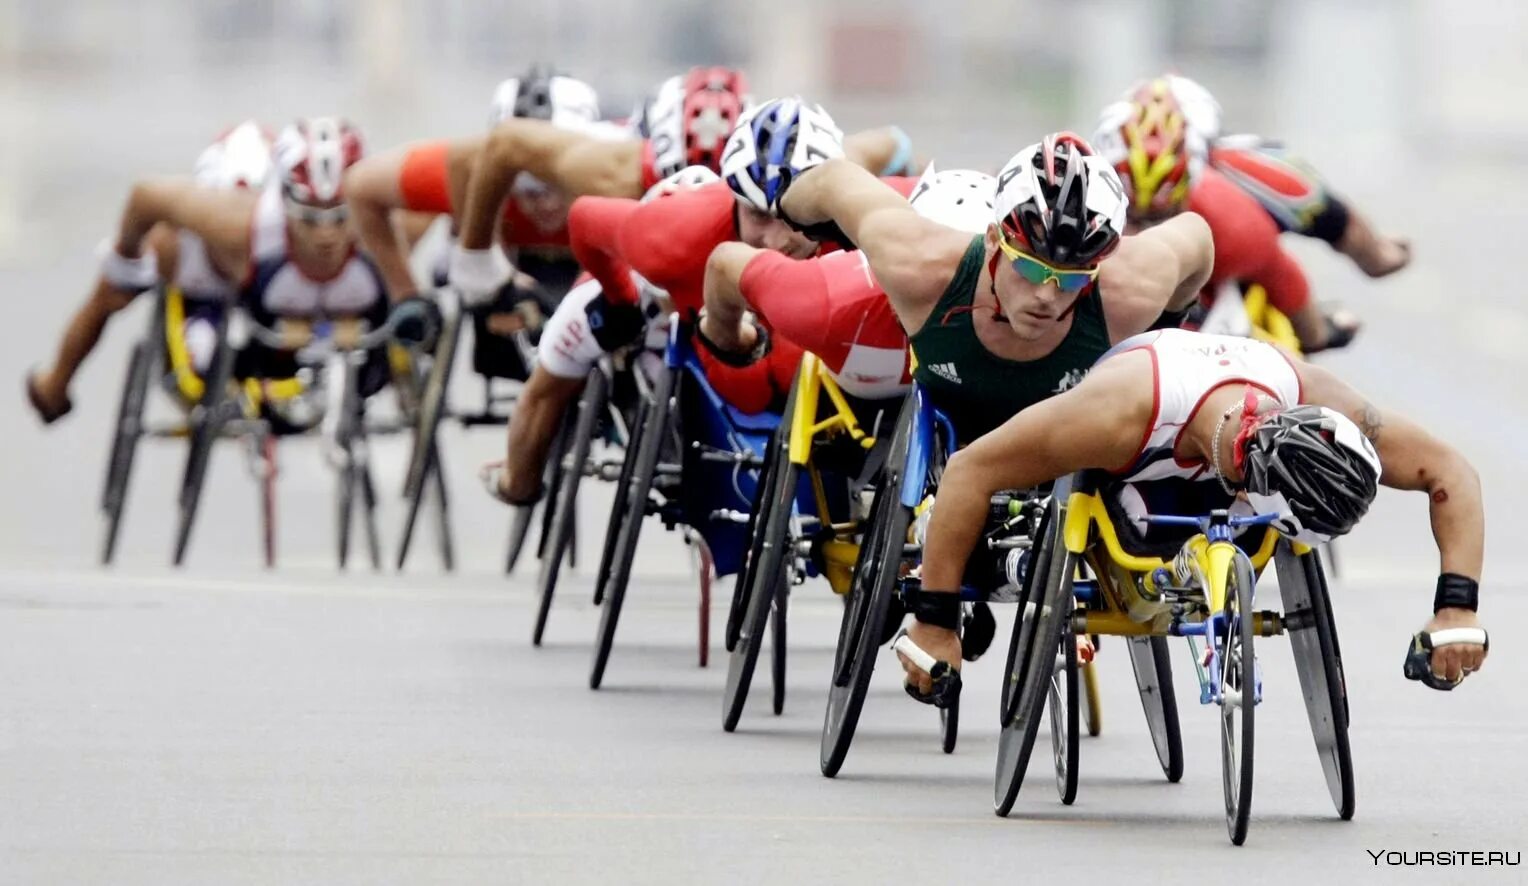 Инвалиды занимаются спортом. Велосипедный спорт Паралимпийские игры. Инвалиды спортсмены. Спорт для людей с ограниченными возможностями. Люди с ограниченными способностями.